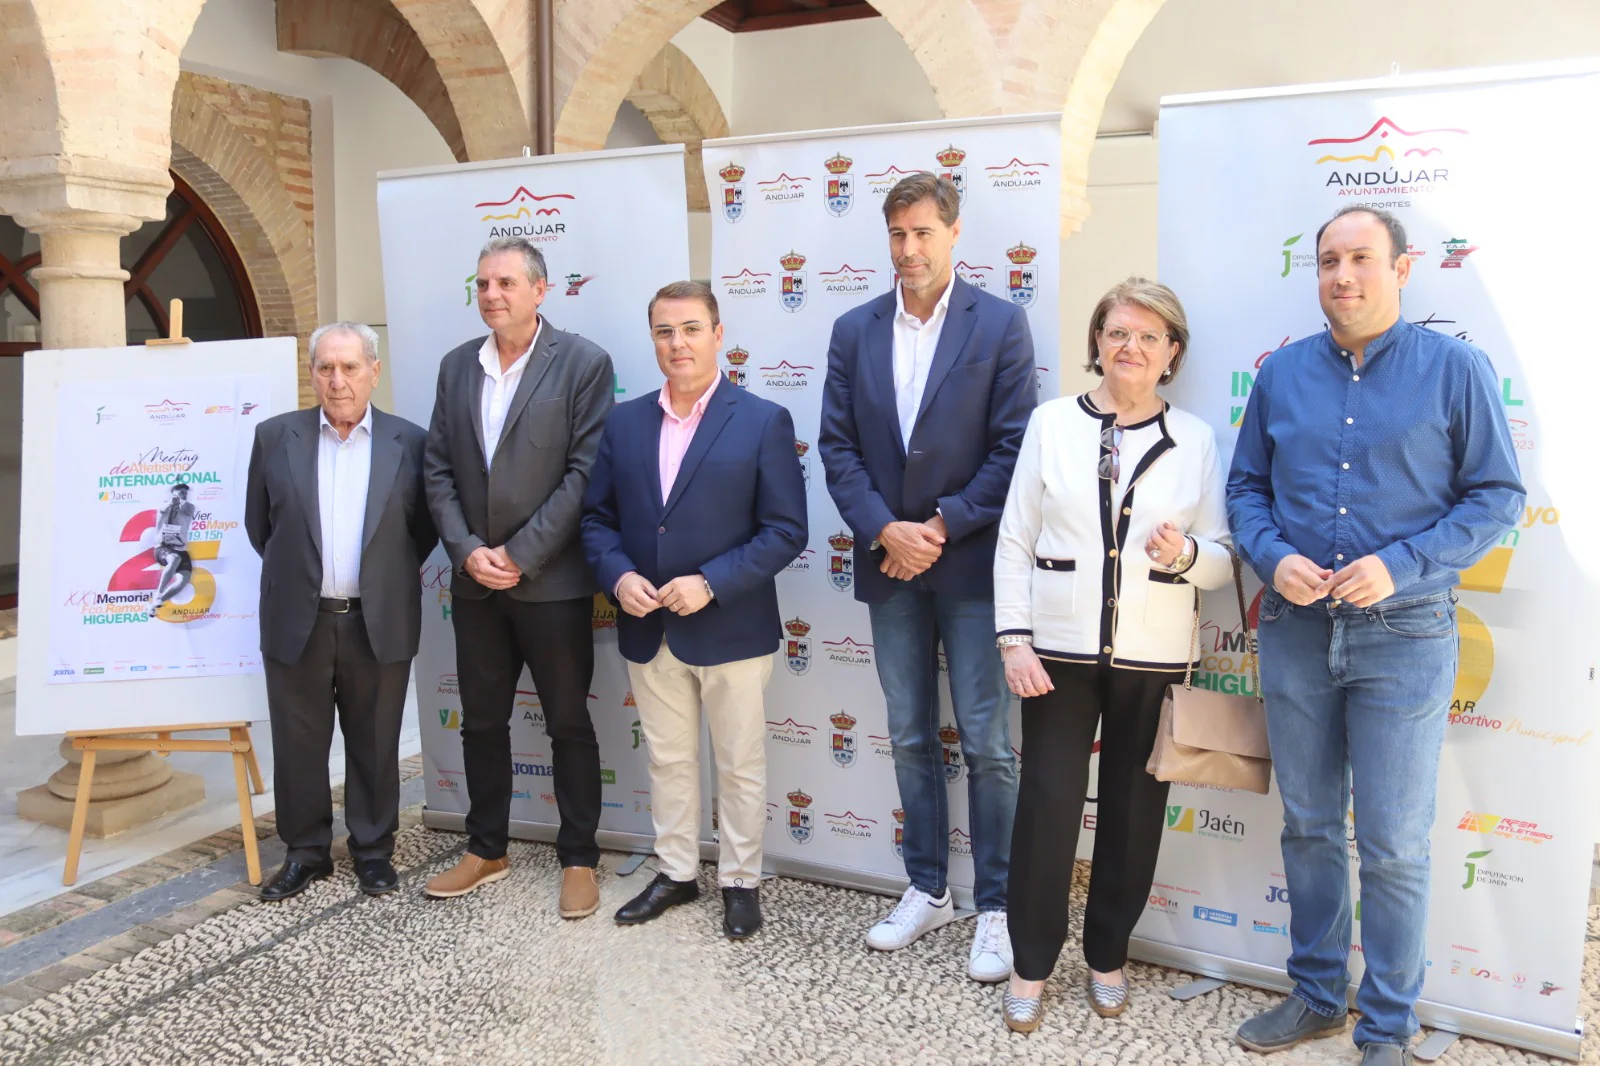 Andújar acogerá el 26 de mayo el Meeting de Atletismo Jaén Paraíso Interior', que cumple su vigésimo quinta edición